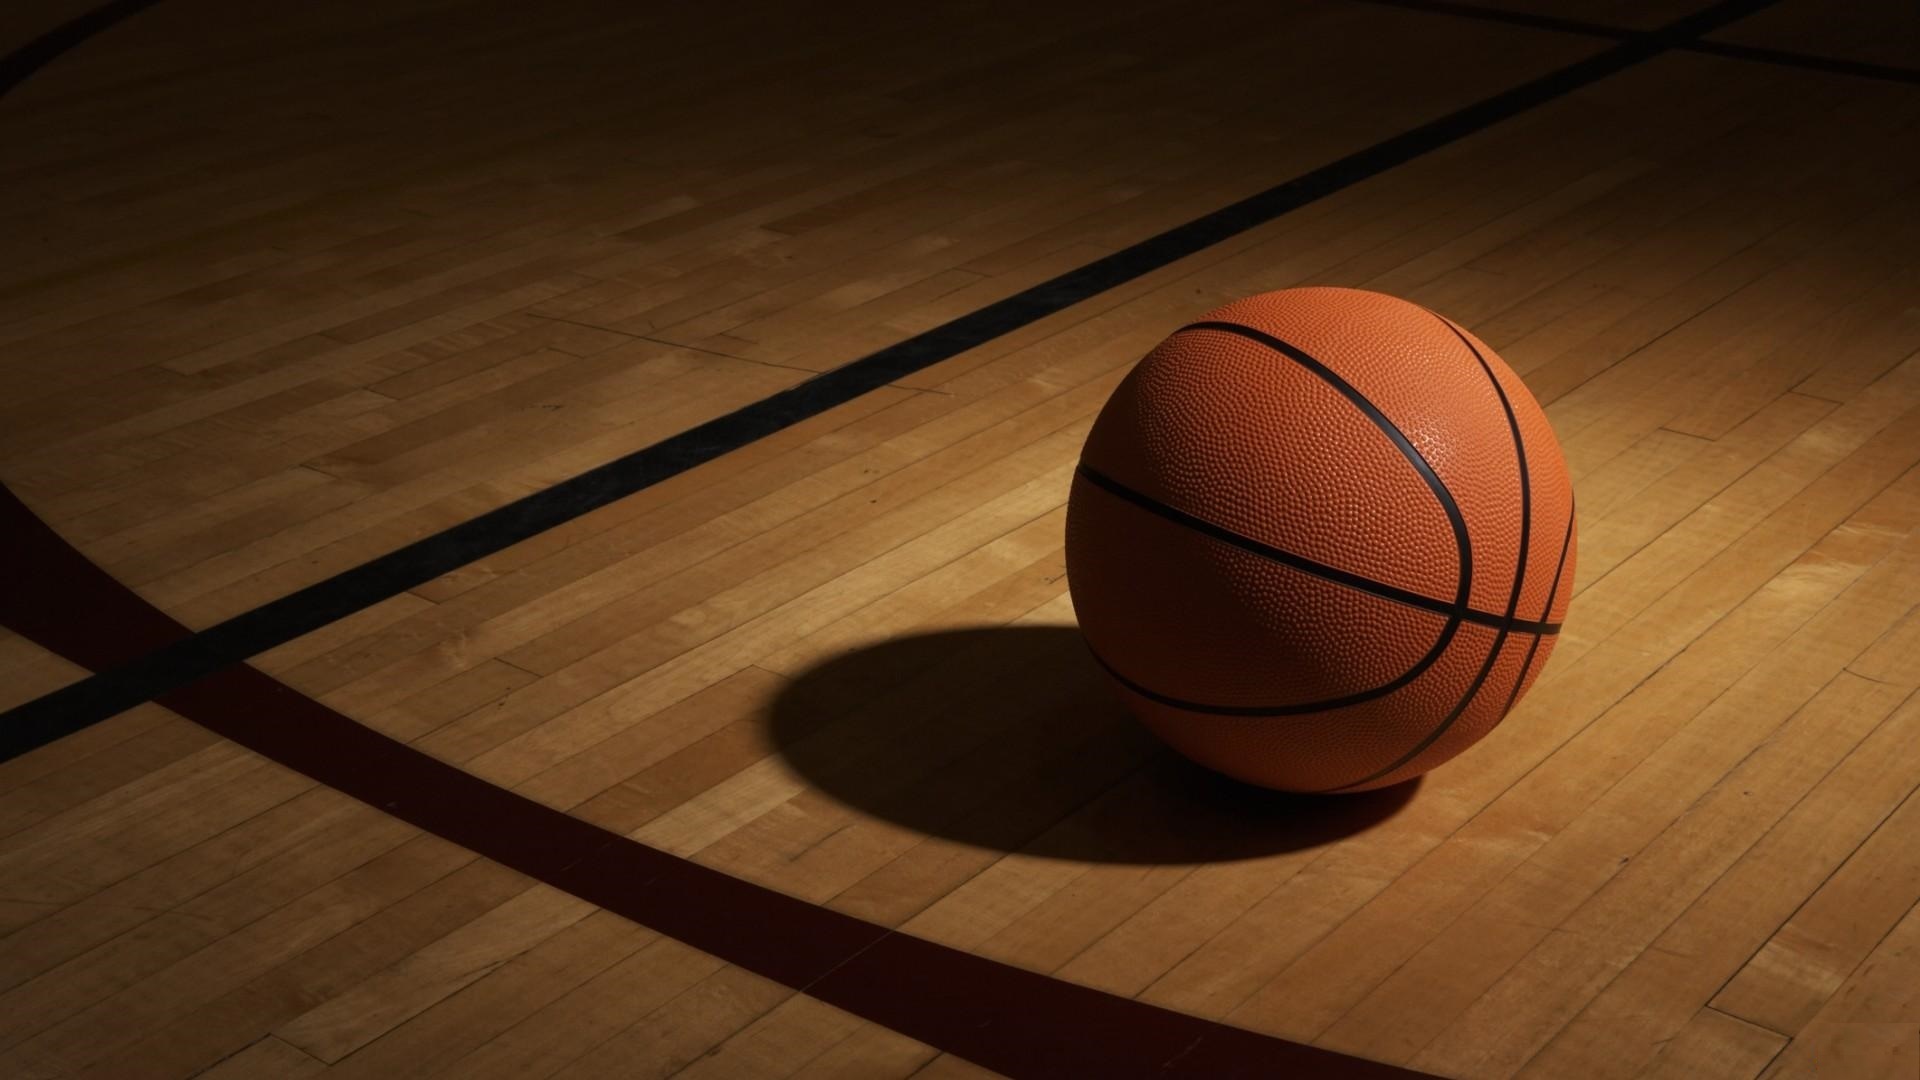 Basketball ball, Vibrant energy, Fast-paced game, Slam dunk, 1920x1080 Full HD Desktop